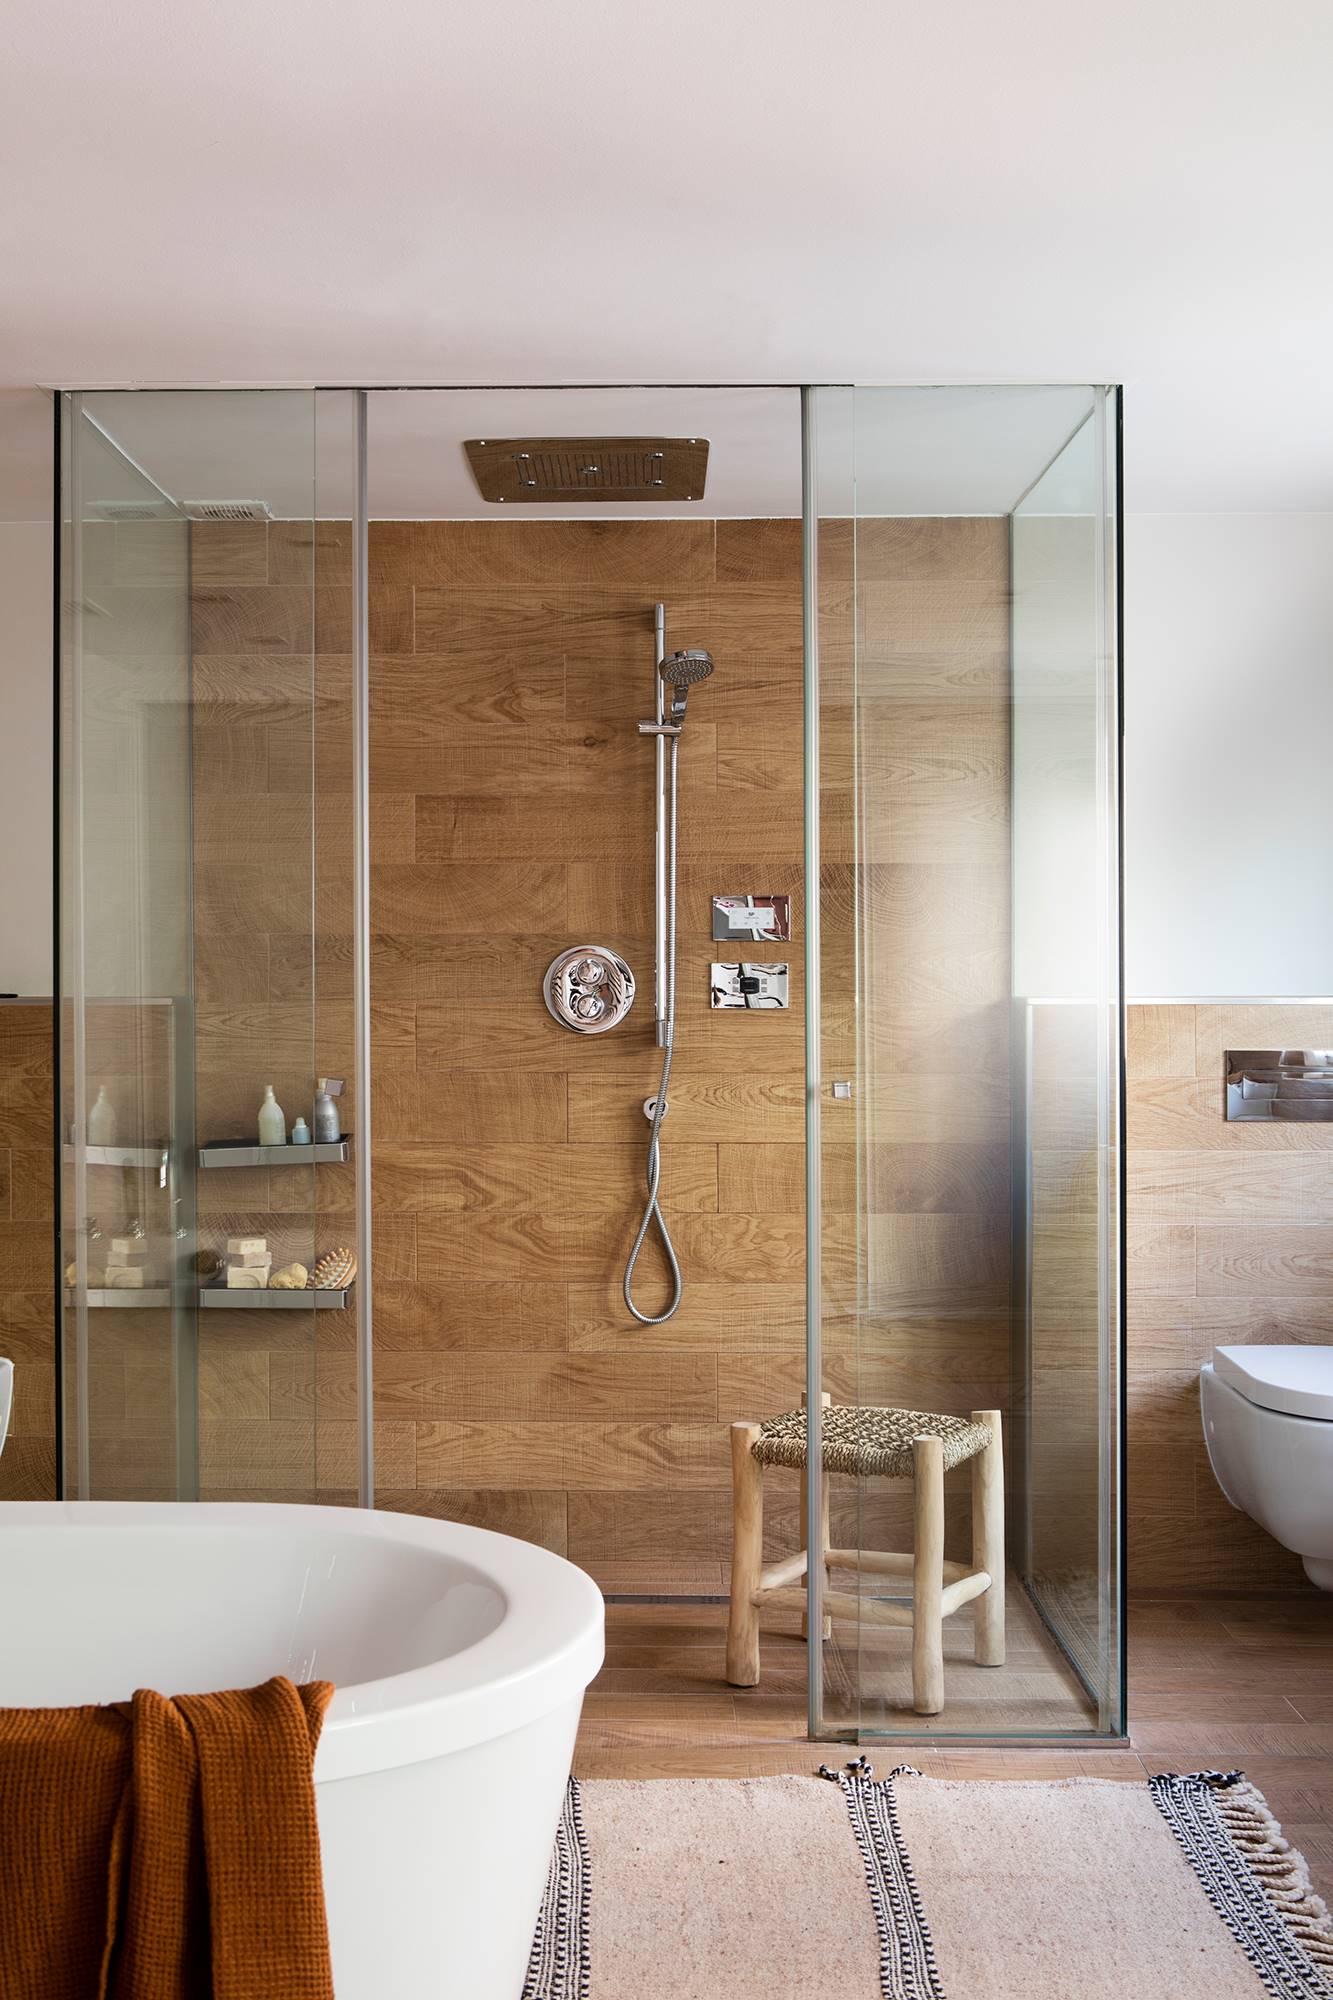 Baño con ducha blanca exenta ovalada, ducha revestida de madera y alfombra.